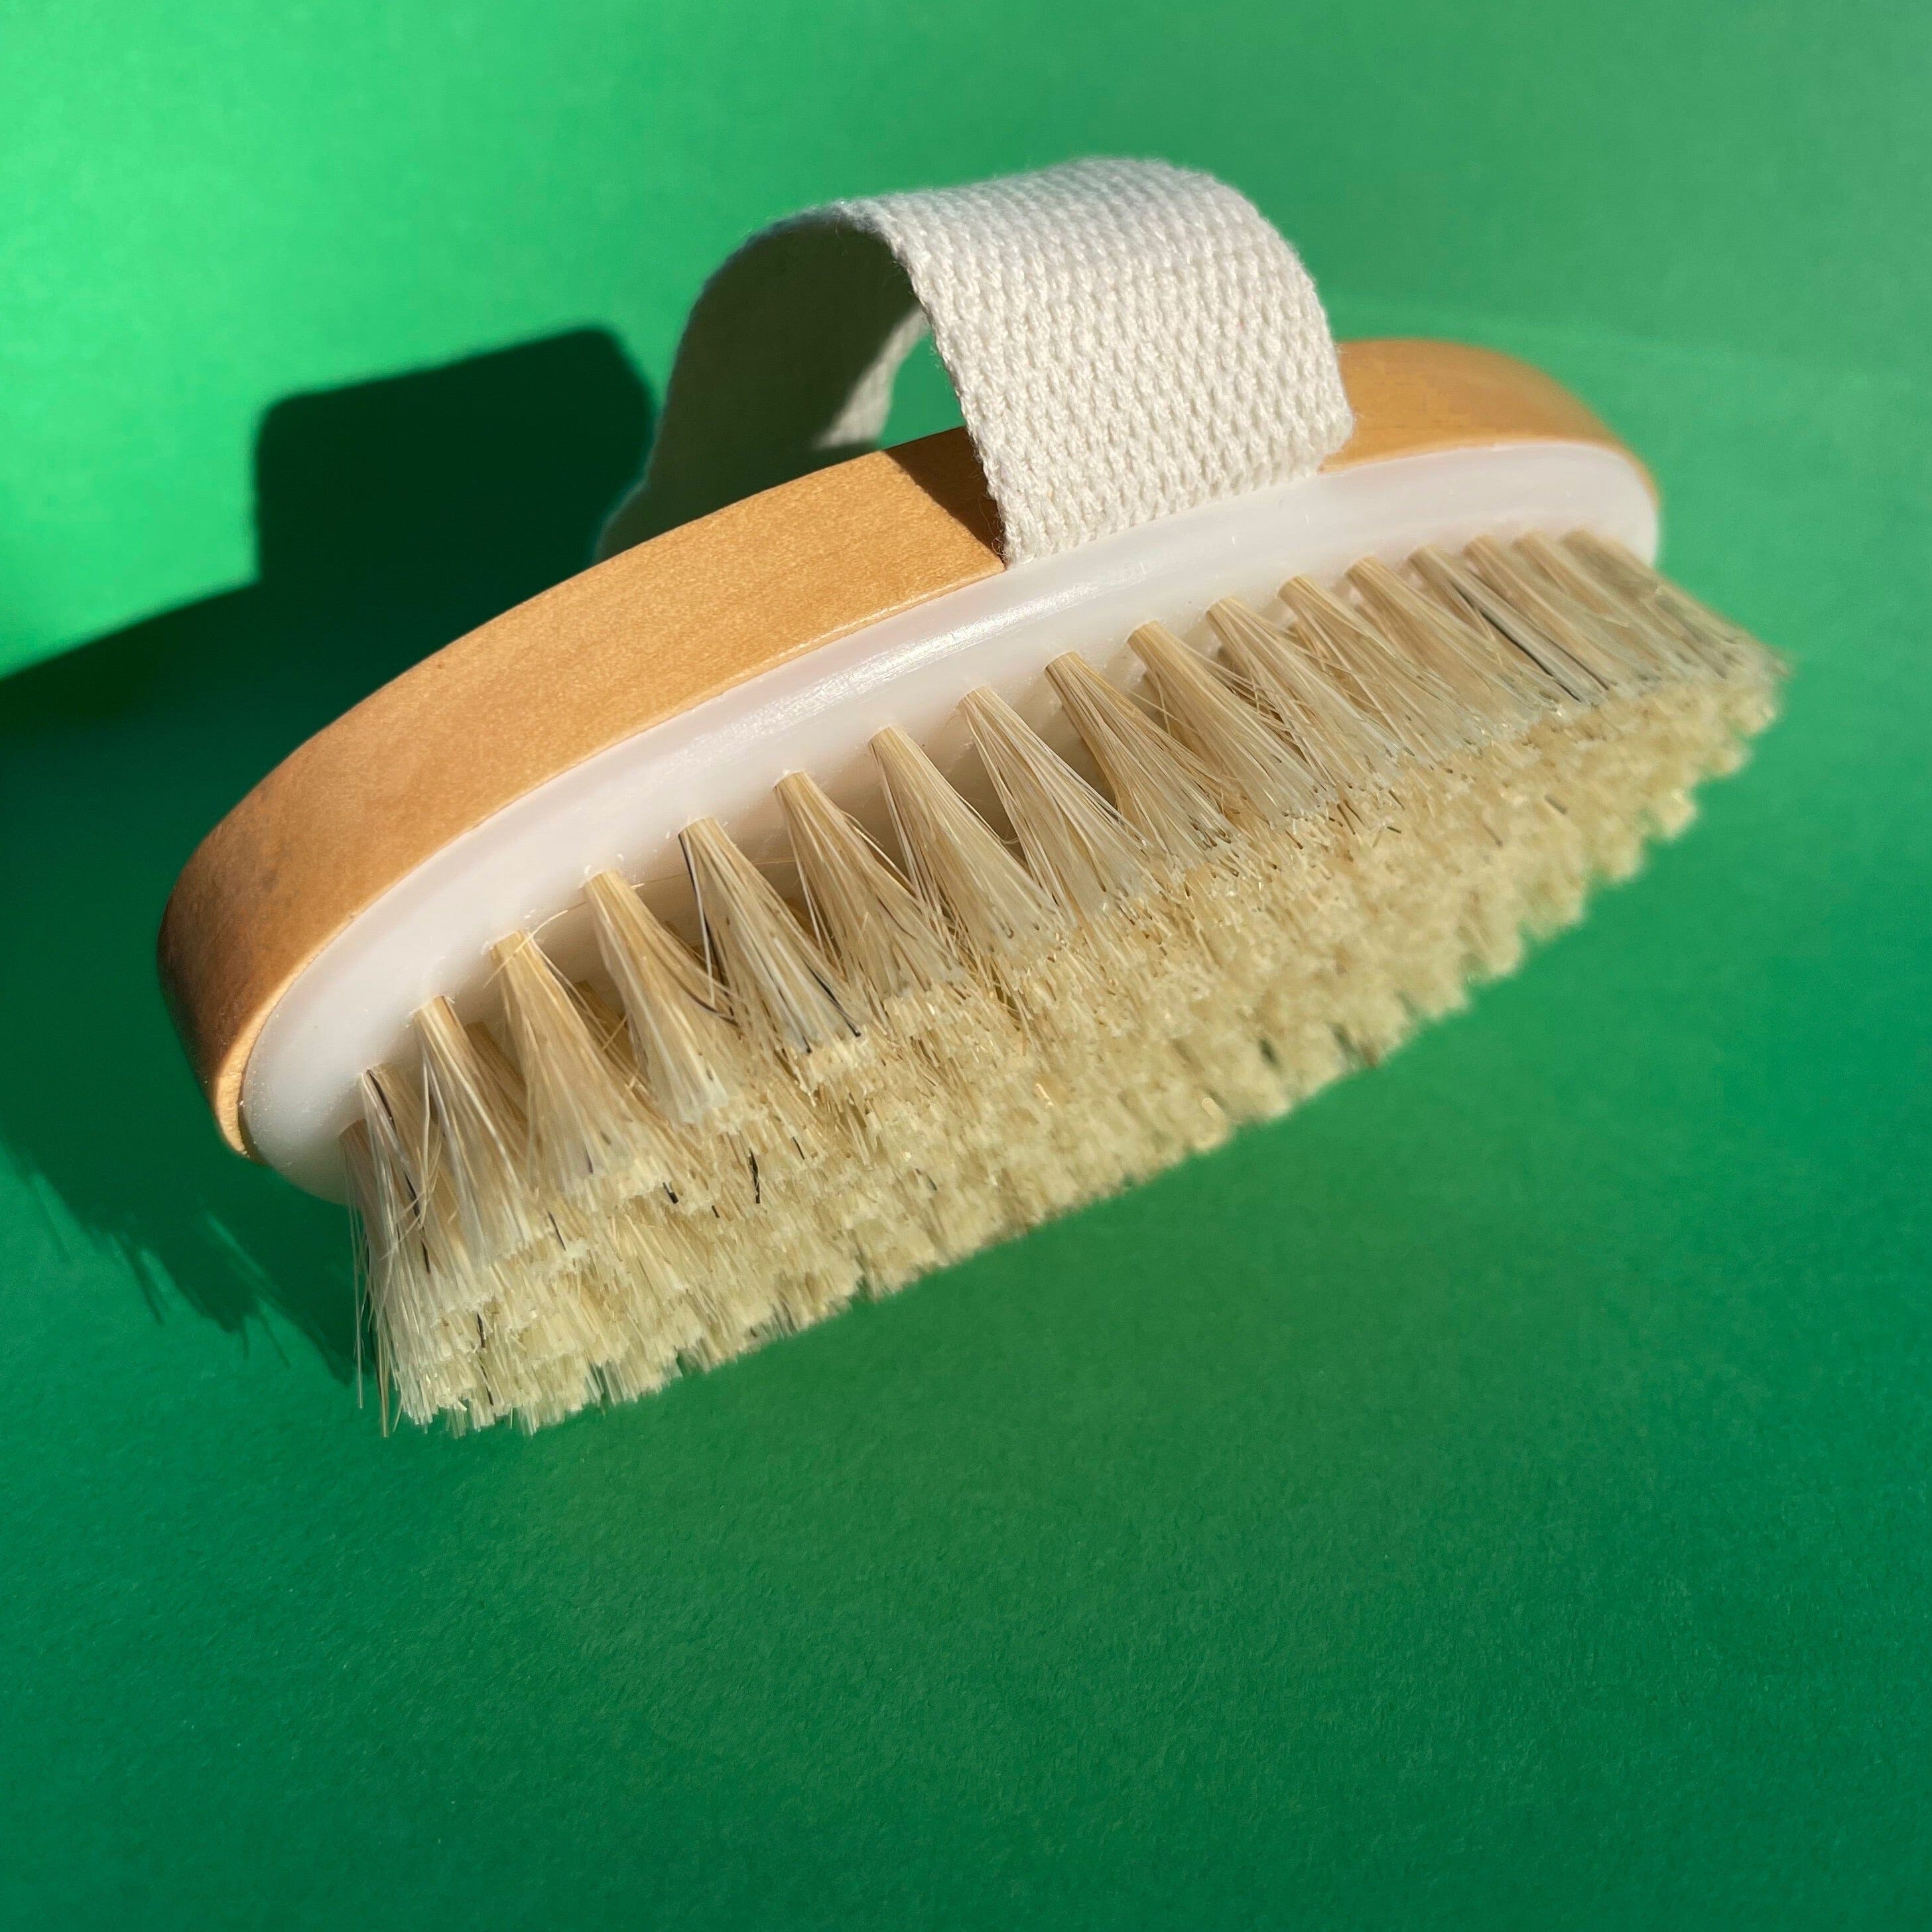 The Dry Brush Health & Beauty StoneyBeeBeauty 